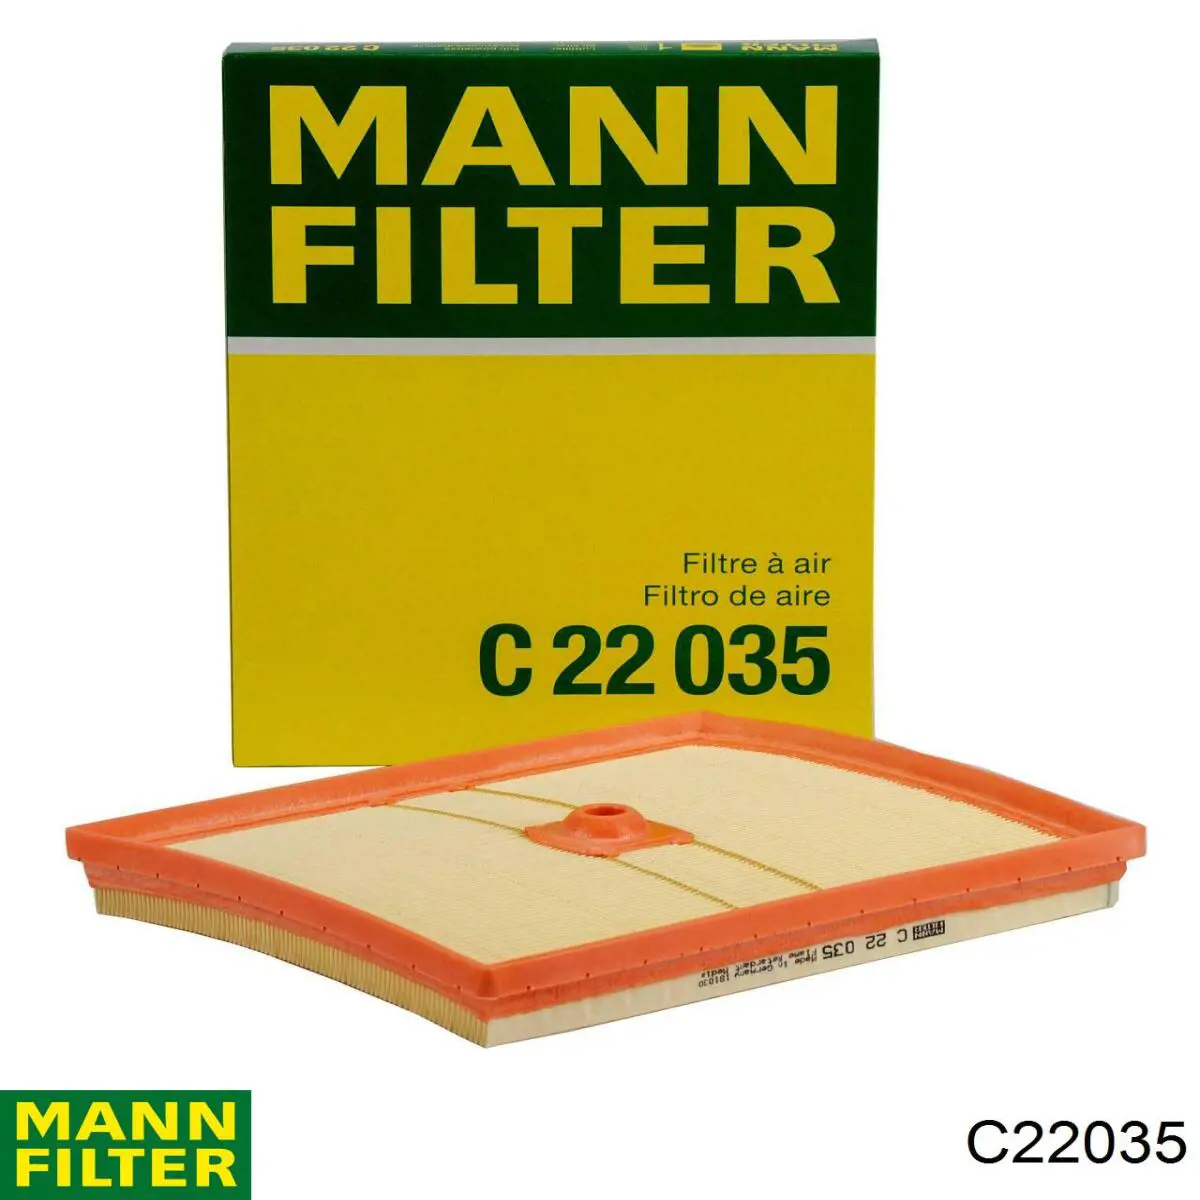 3C129086 AND filtro de aire